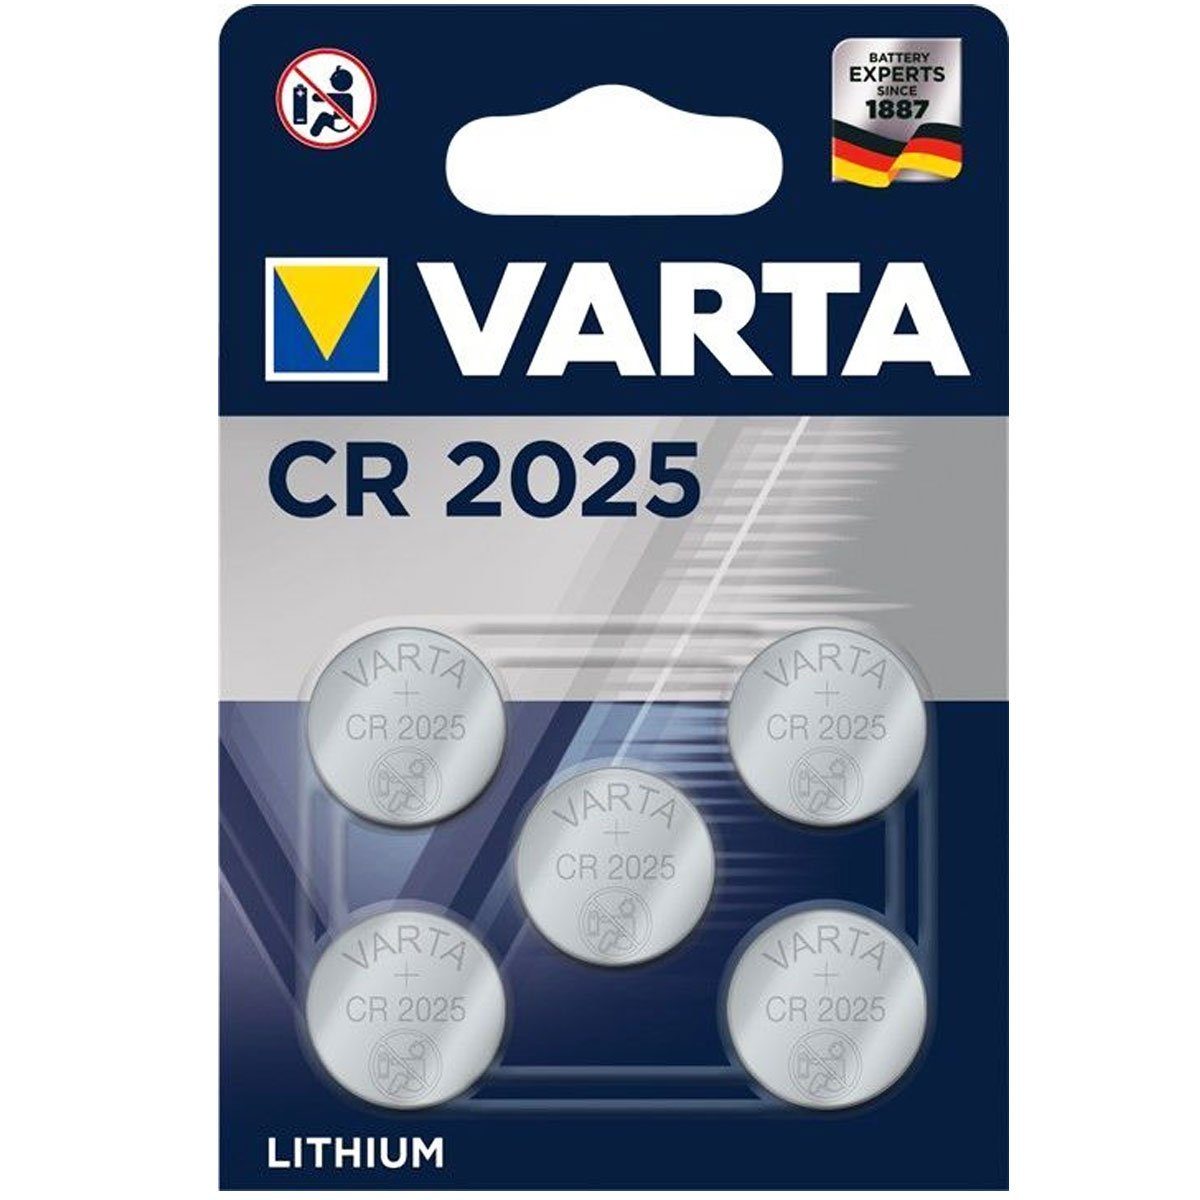 VARTA Varta CR2025 (3,0 V) Lithium Sparpack im Batterie, 5er Batterie